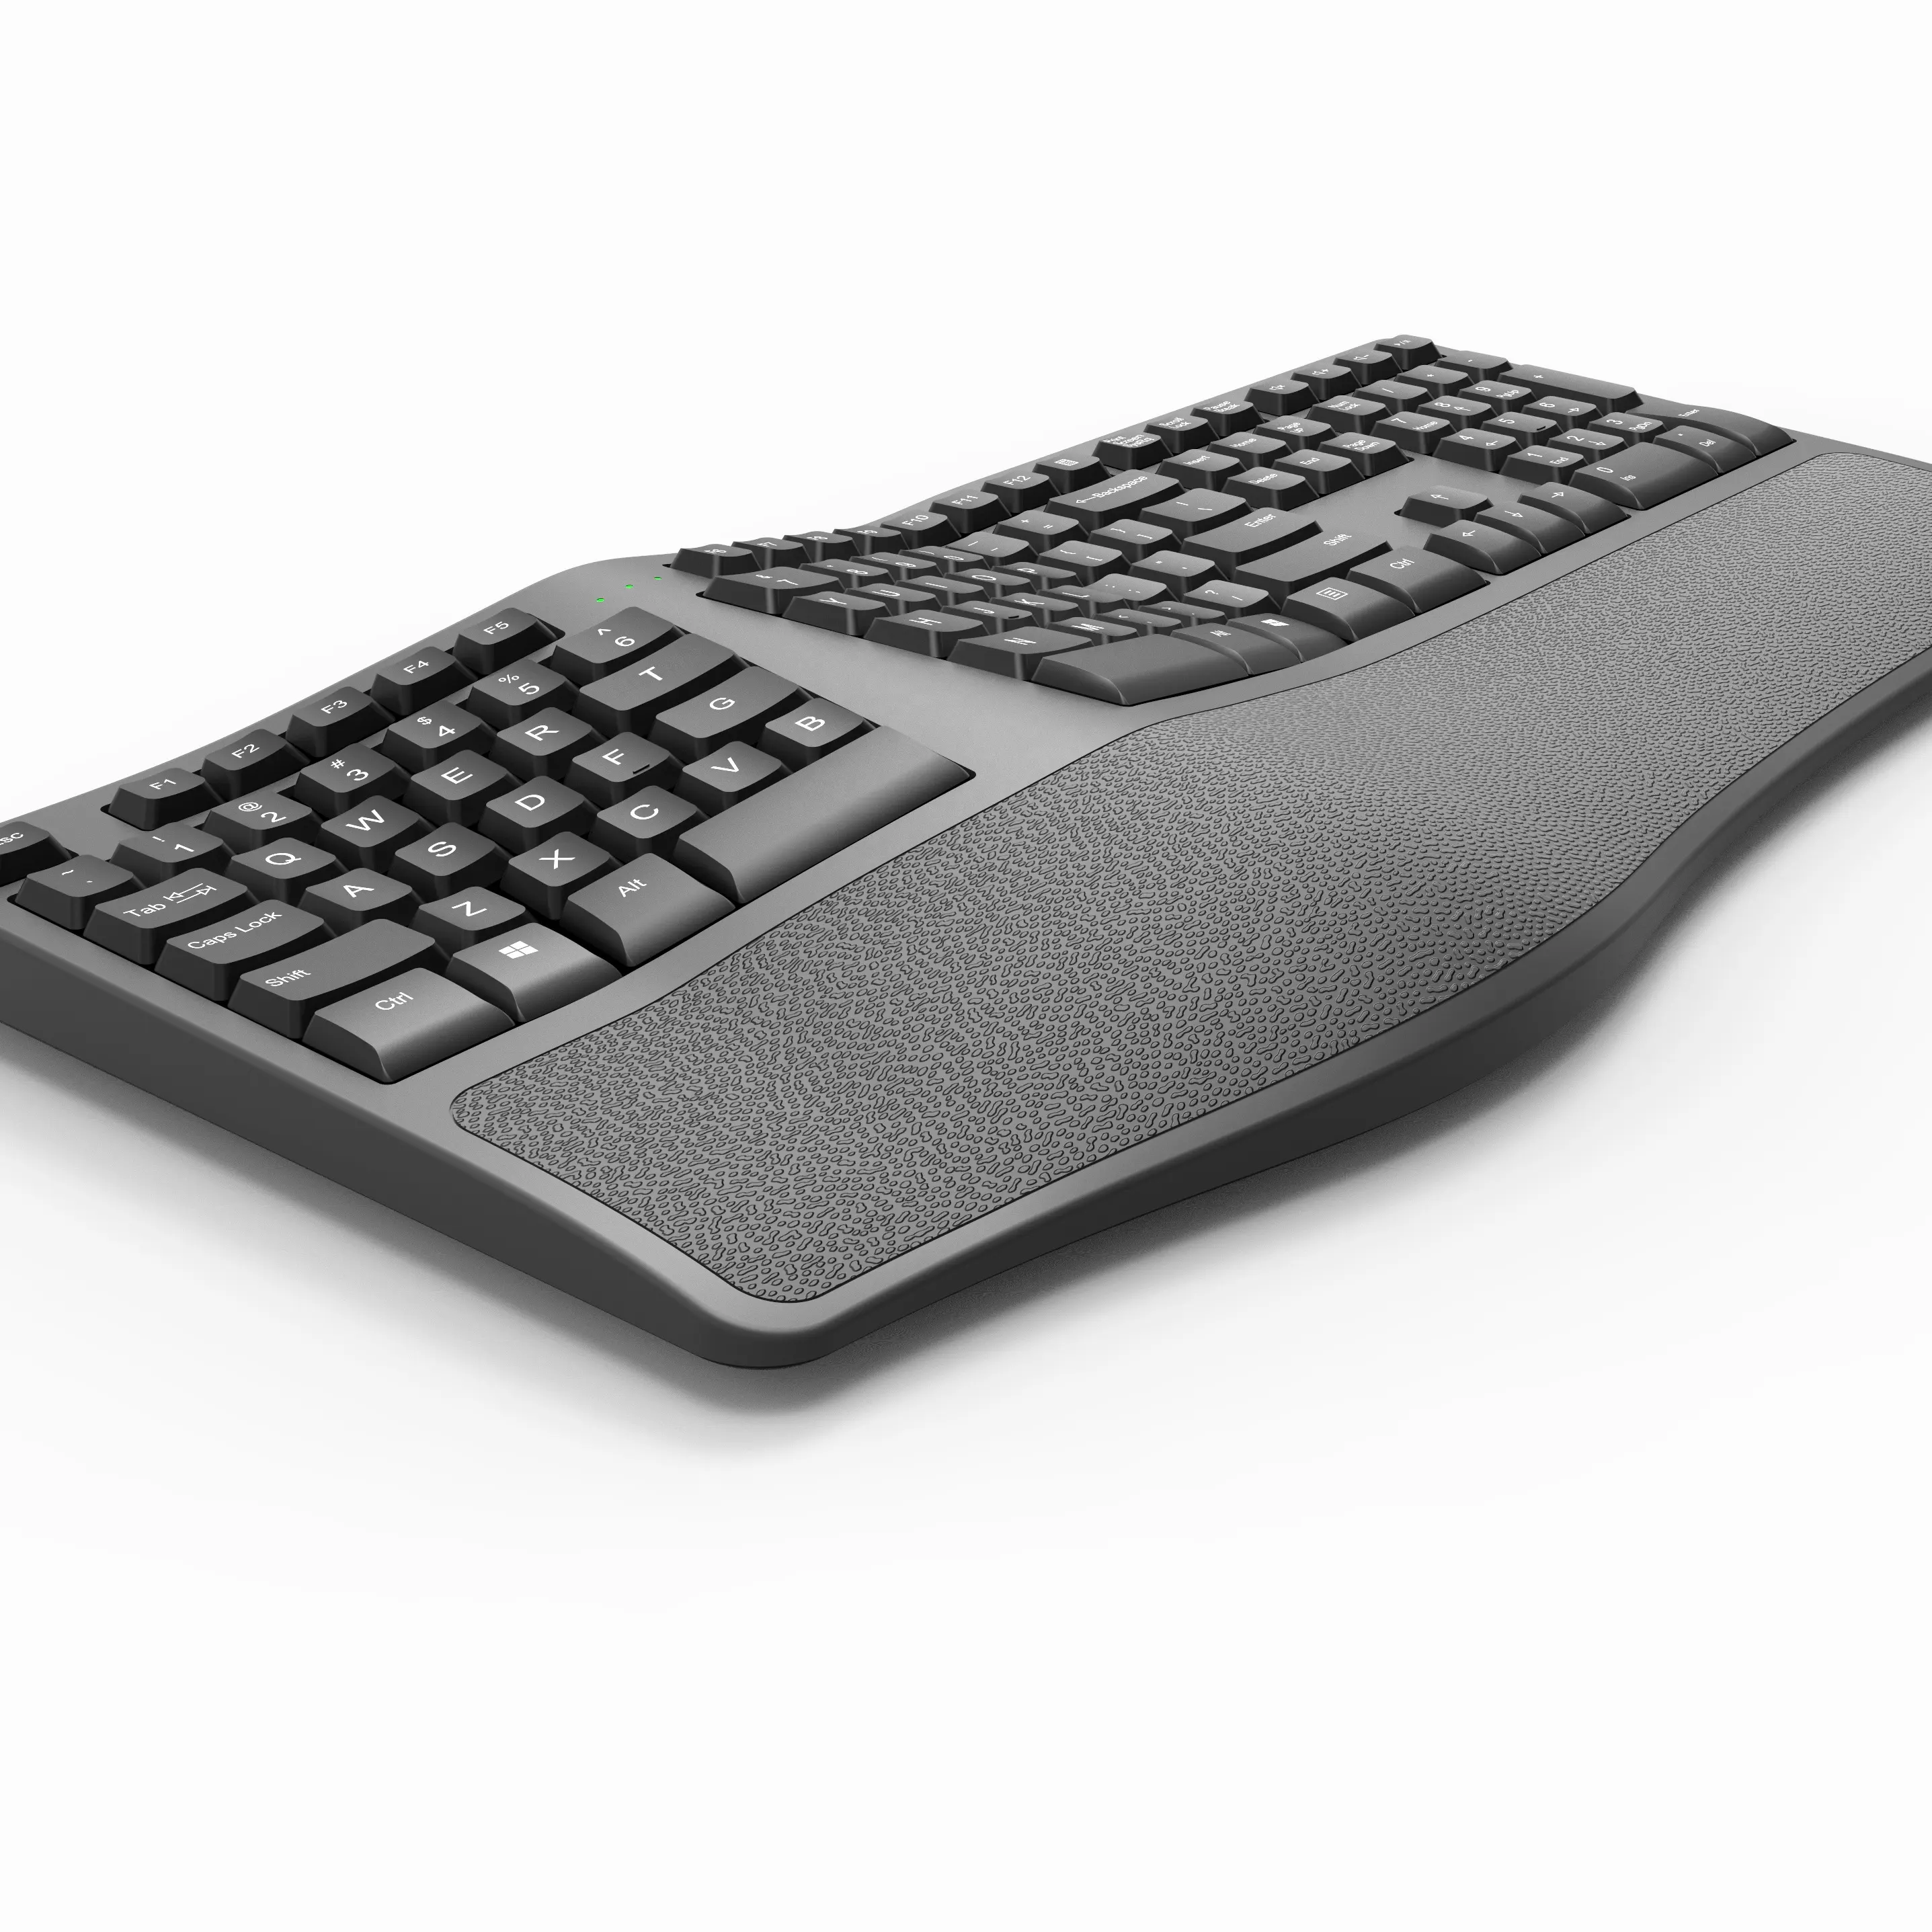 सच उच्च प्रदर्शन के साथ Ergonomic कीबोर्ड वायरलेस रिचार्जेबल 2.4G Ergonomic कीबोर्ड कलाई आराम तकिया के लिए क्रोम/पीसी